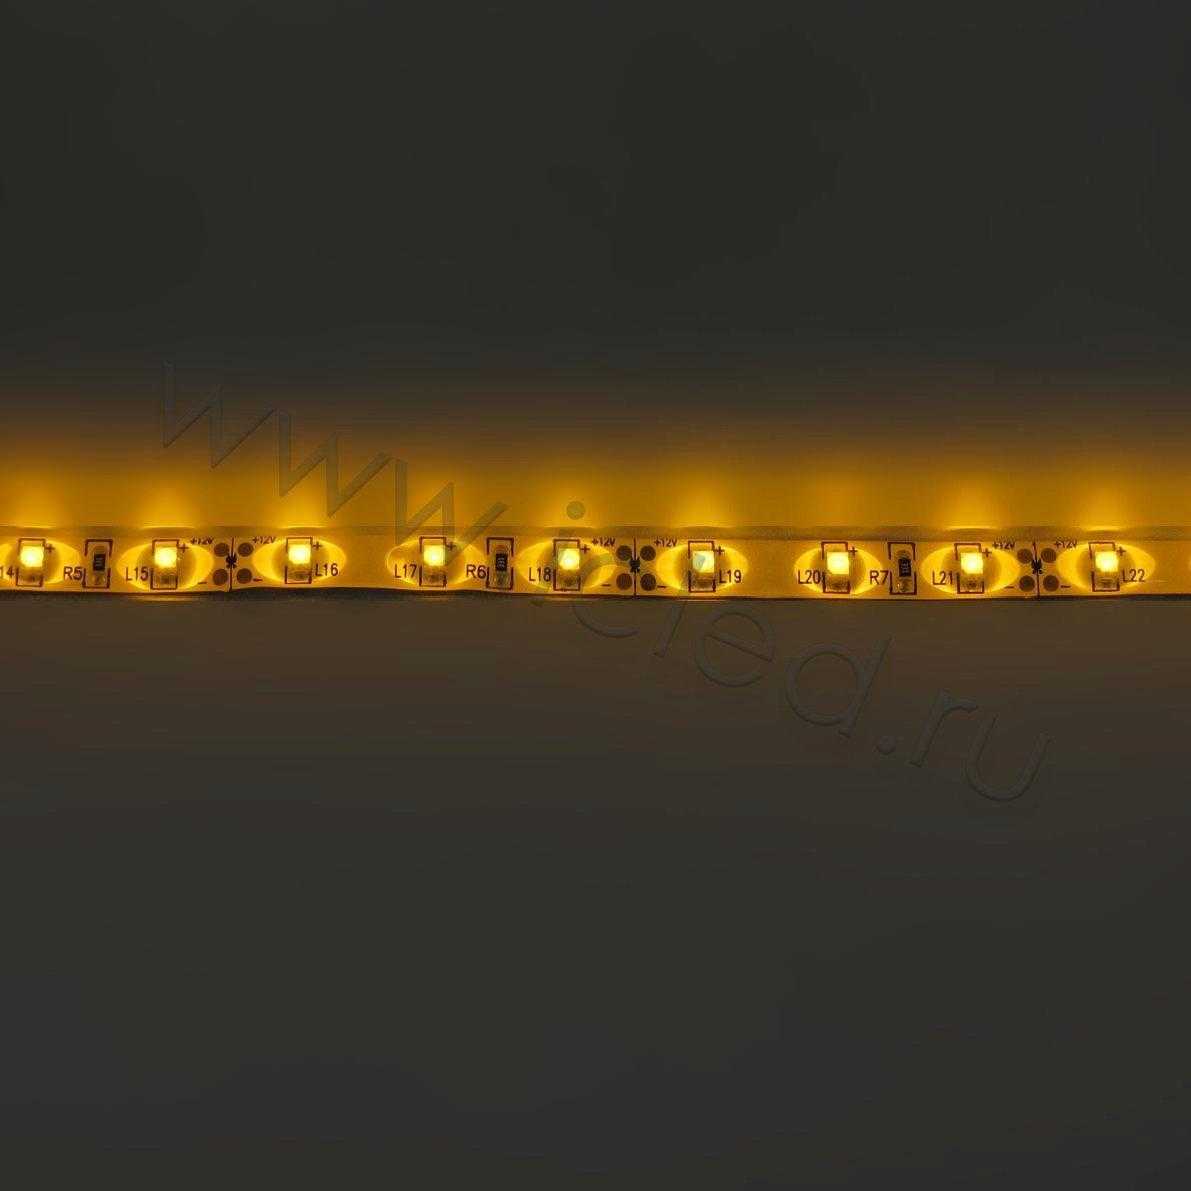 Влагозащищенные светодиодные ленты Светодиодная лента Standart PRO class, 3528, 60 led/m, Yellow, 12V, IP65 Icled